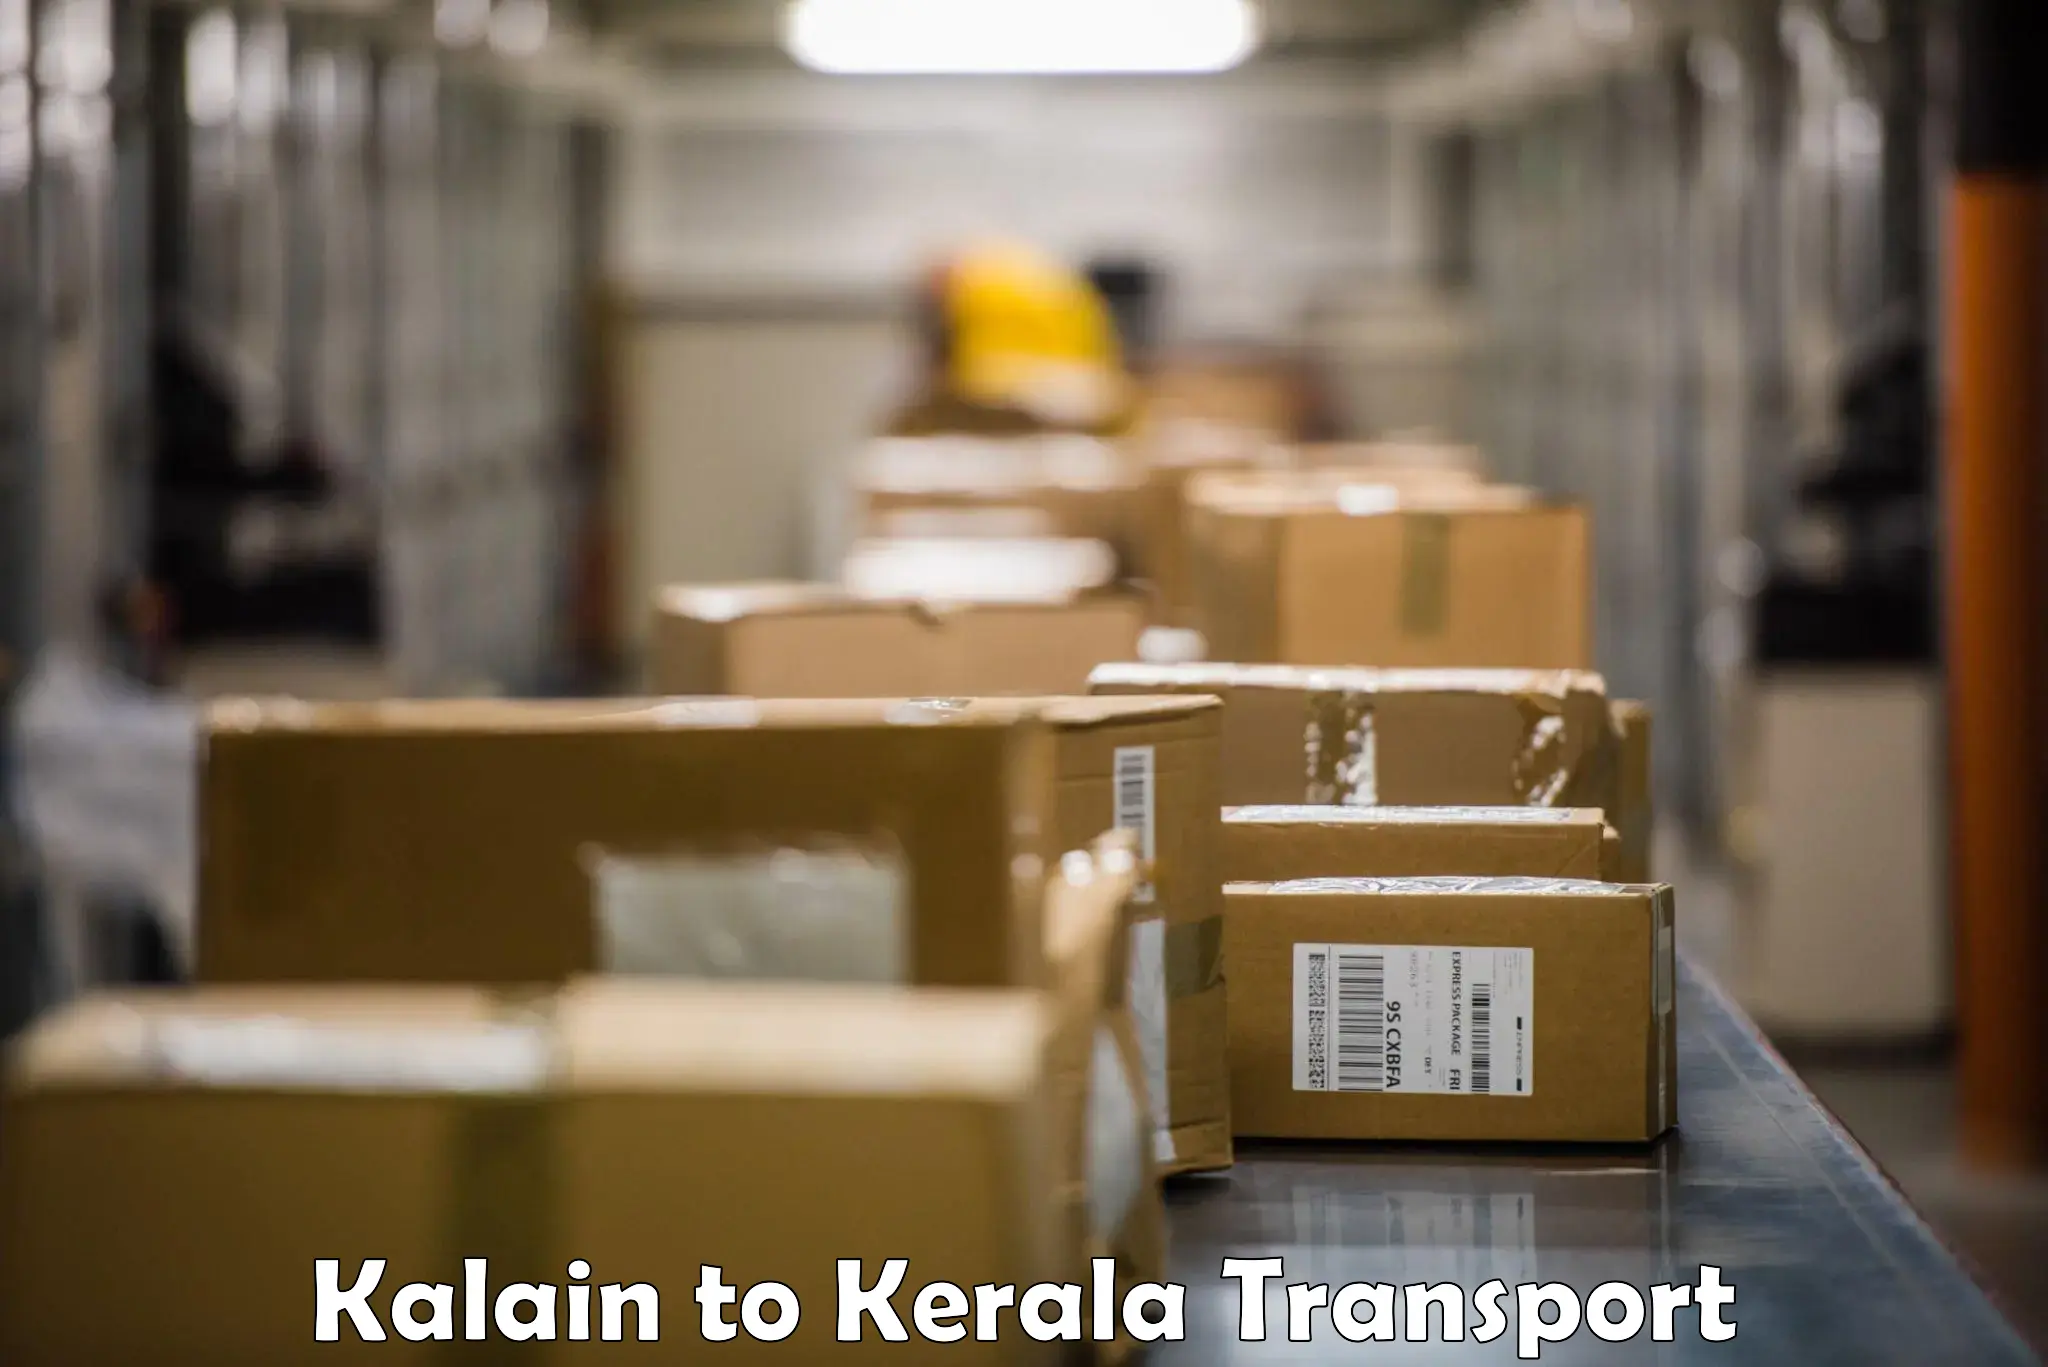 Lorry transport service Kalain to Kothanalloor